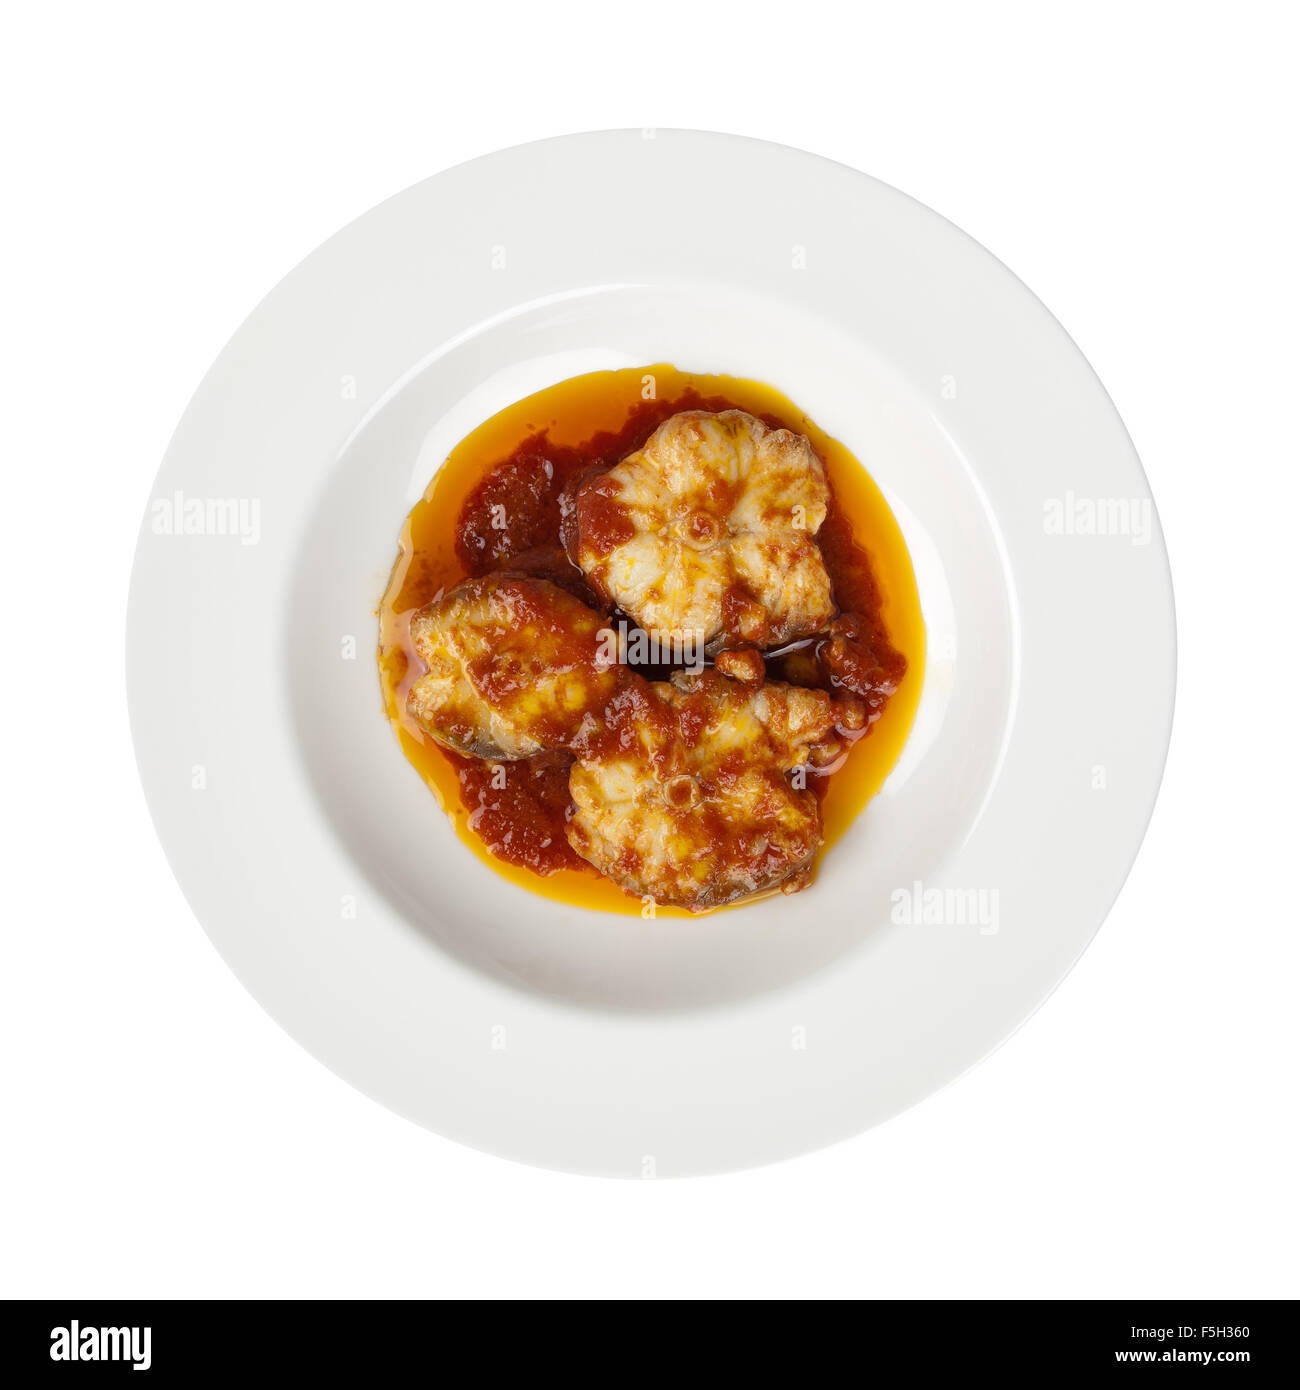 Rodajas de pescado, tomate, aceite de oliva y ajo en la placa redonda, marisco italiana receta tradicional conocido como Palombo alla Livornese Foto de stock